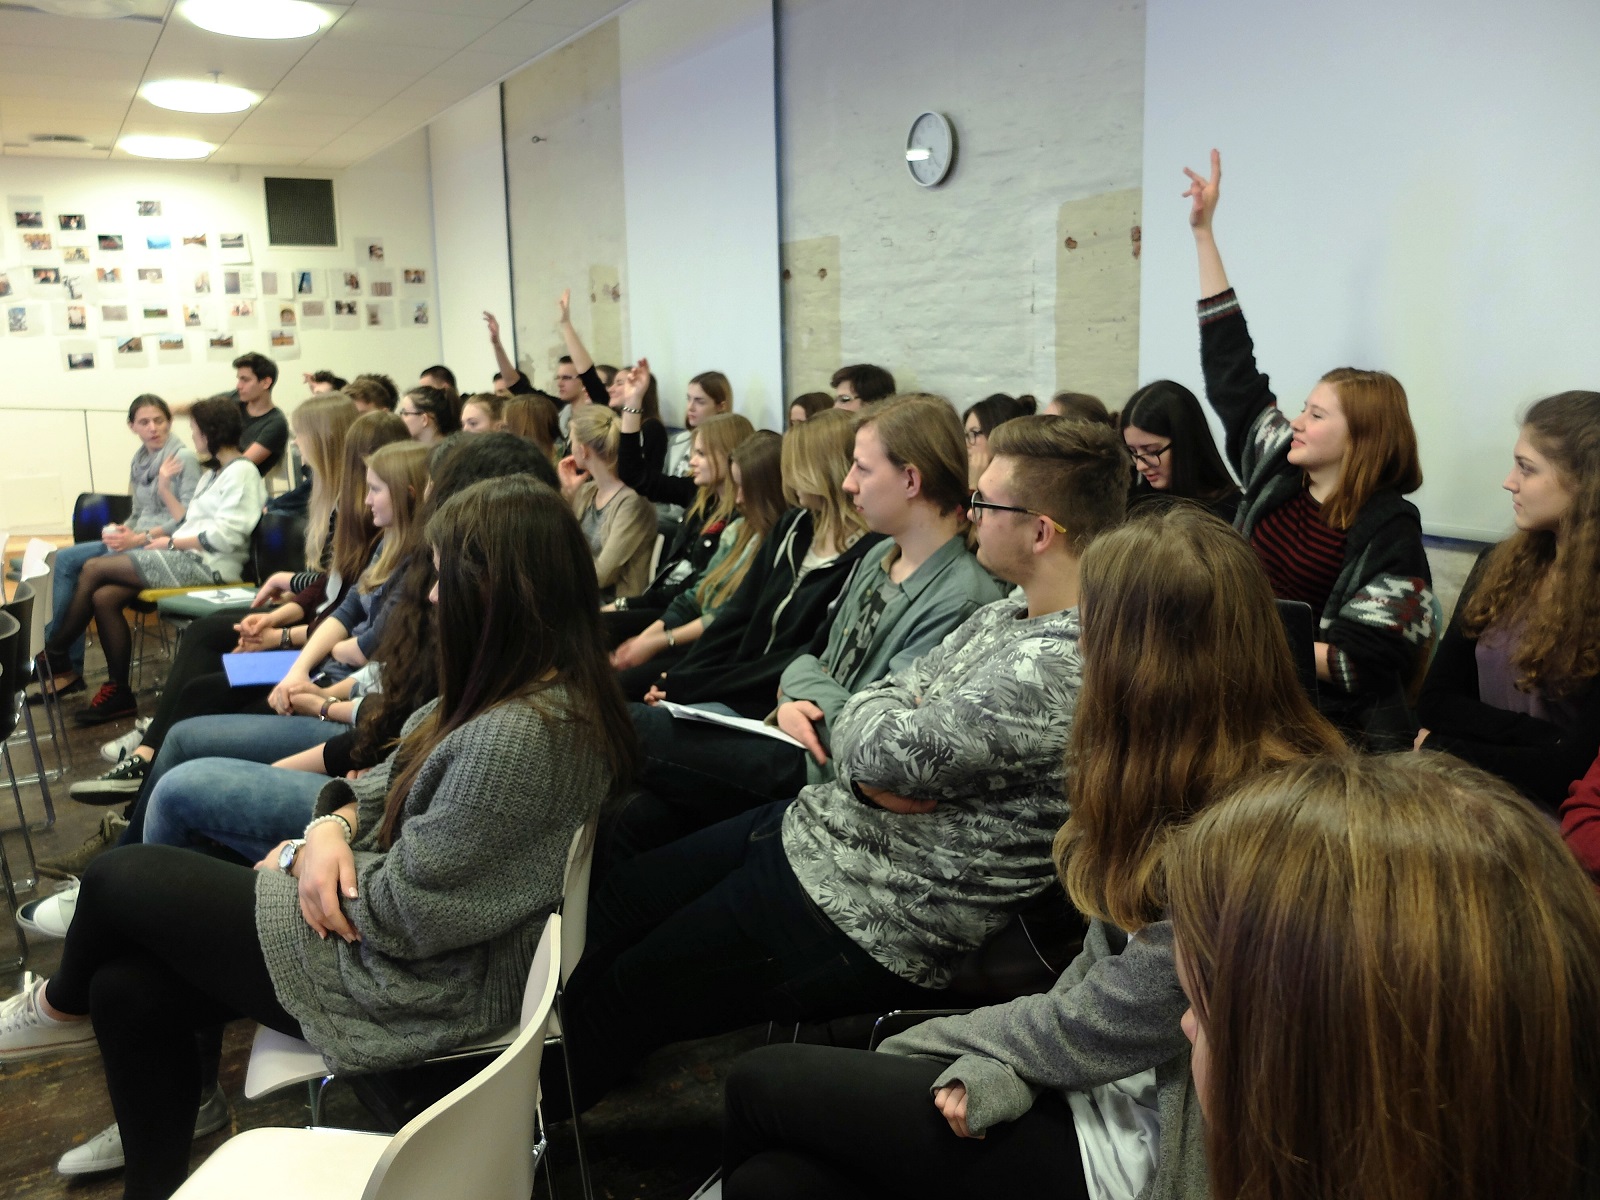 Uczestnicy w konferencji w sali wykładowej - jedna osoba podnosi rękę do góry.